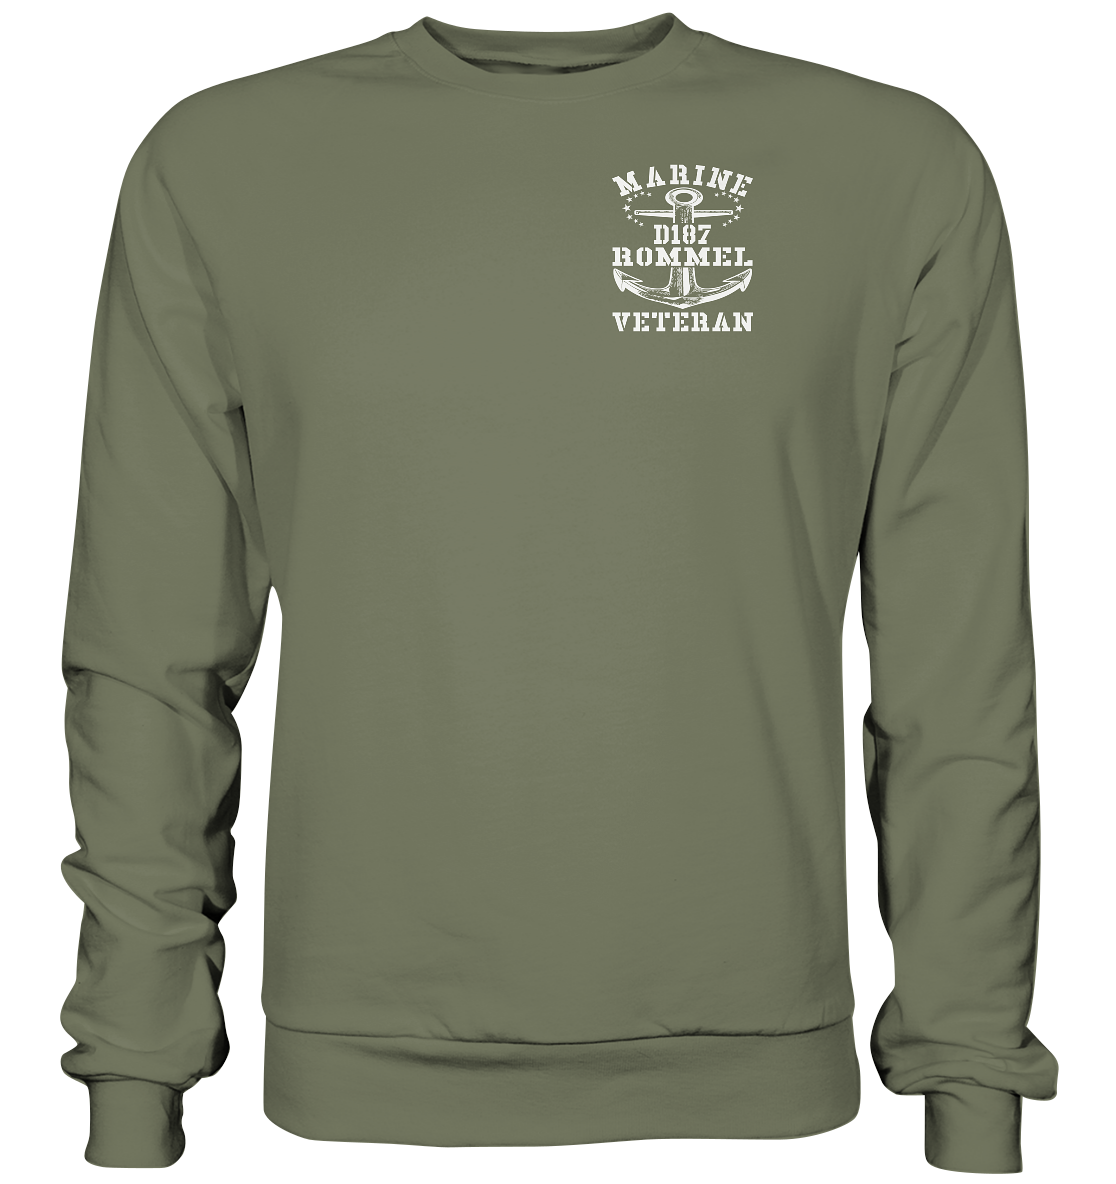 D187 Zerstörer ROMMEL Marine Veteran Brustlogo - Premium Sweatshirt